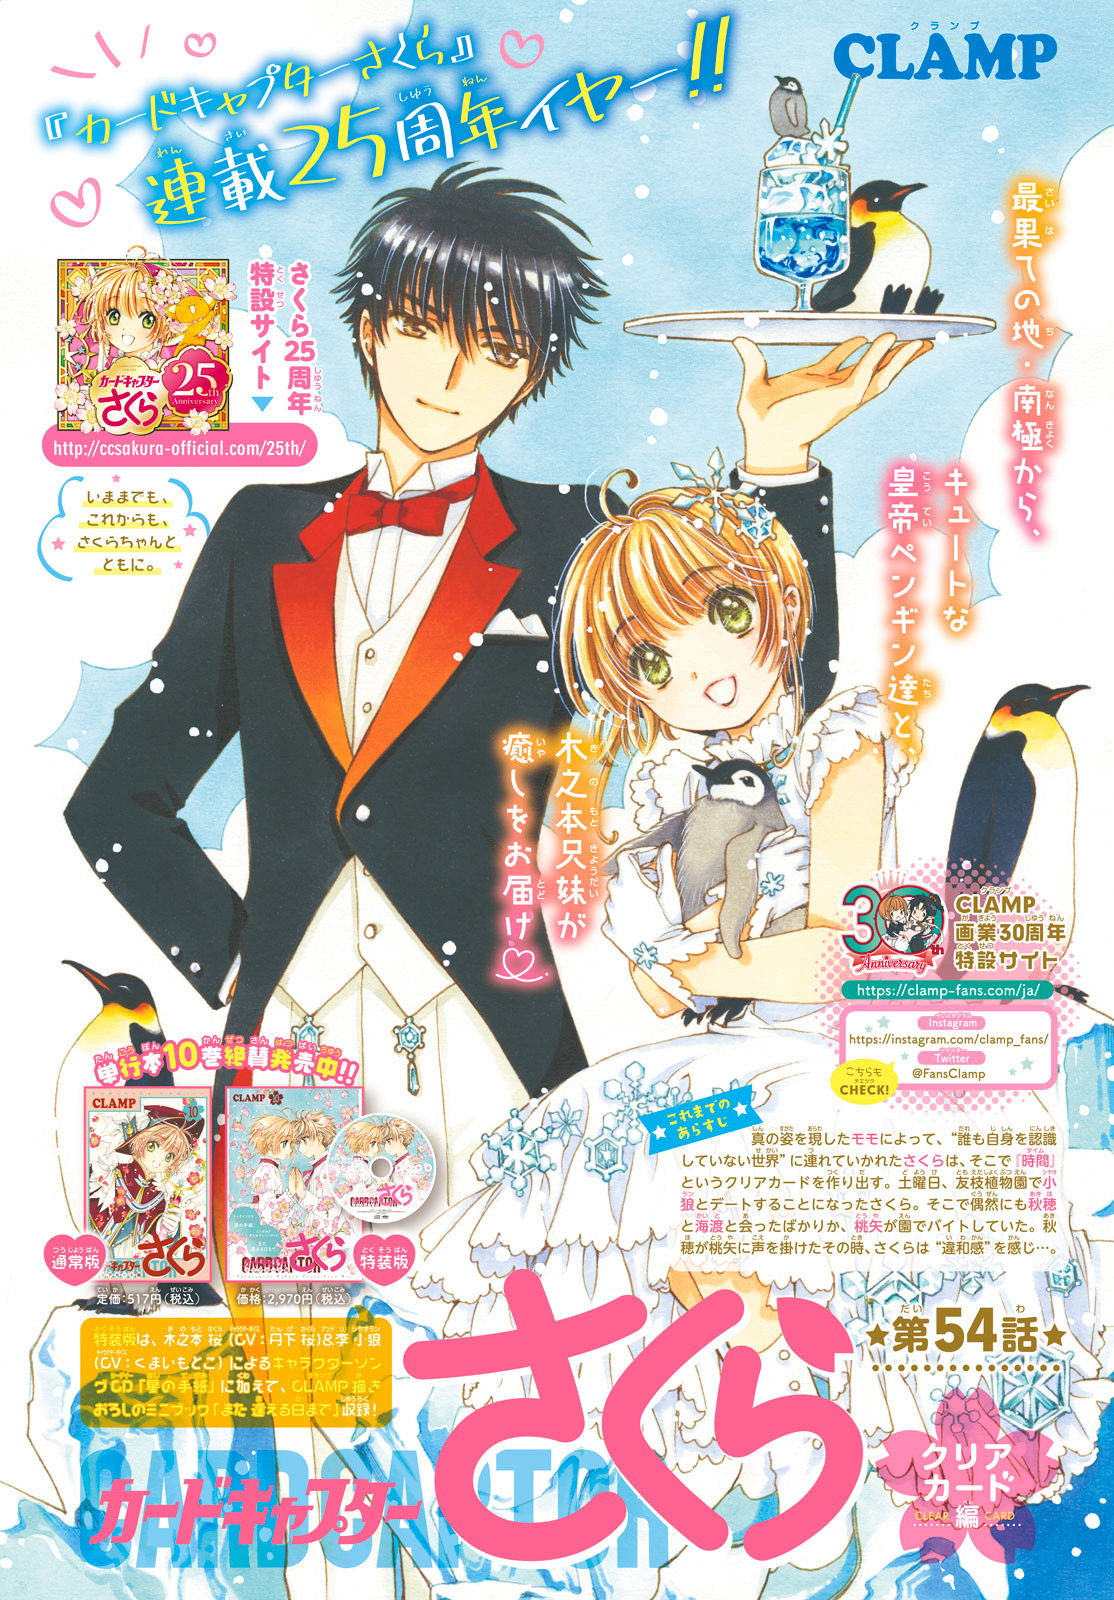 Cardcaptor Sakura et autres mangas [CLAMP] - Page 6 Chap_510